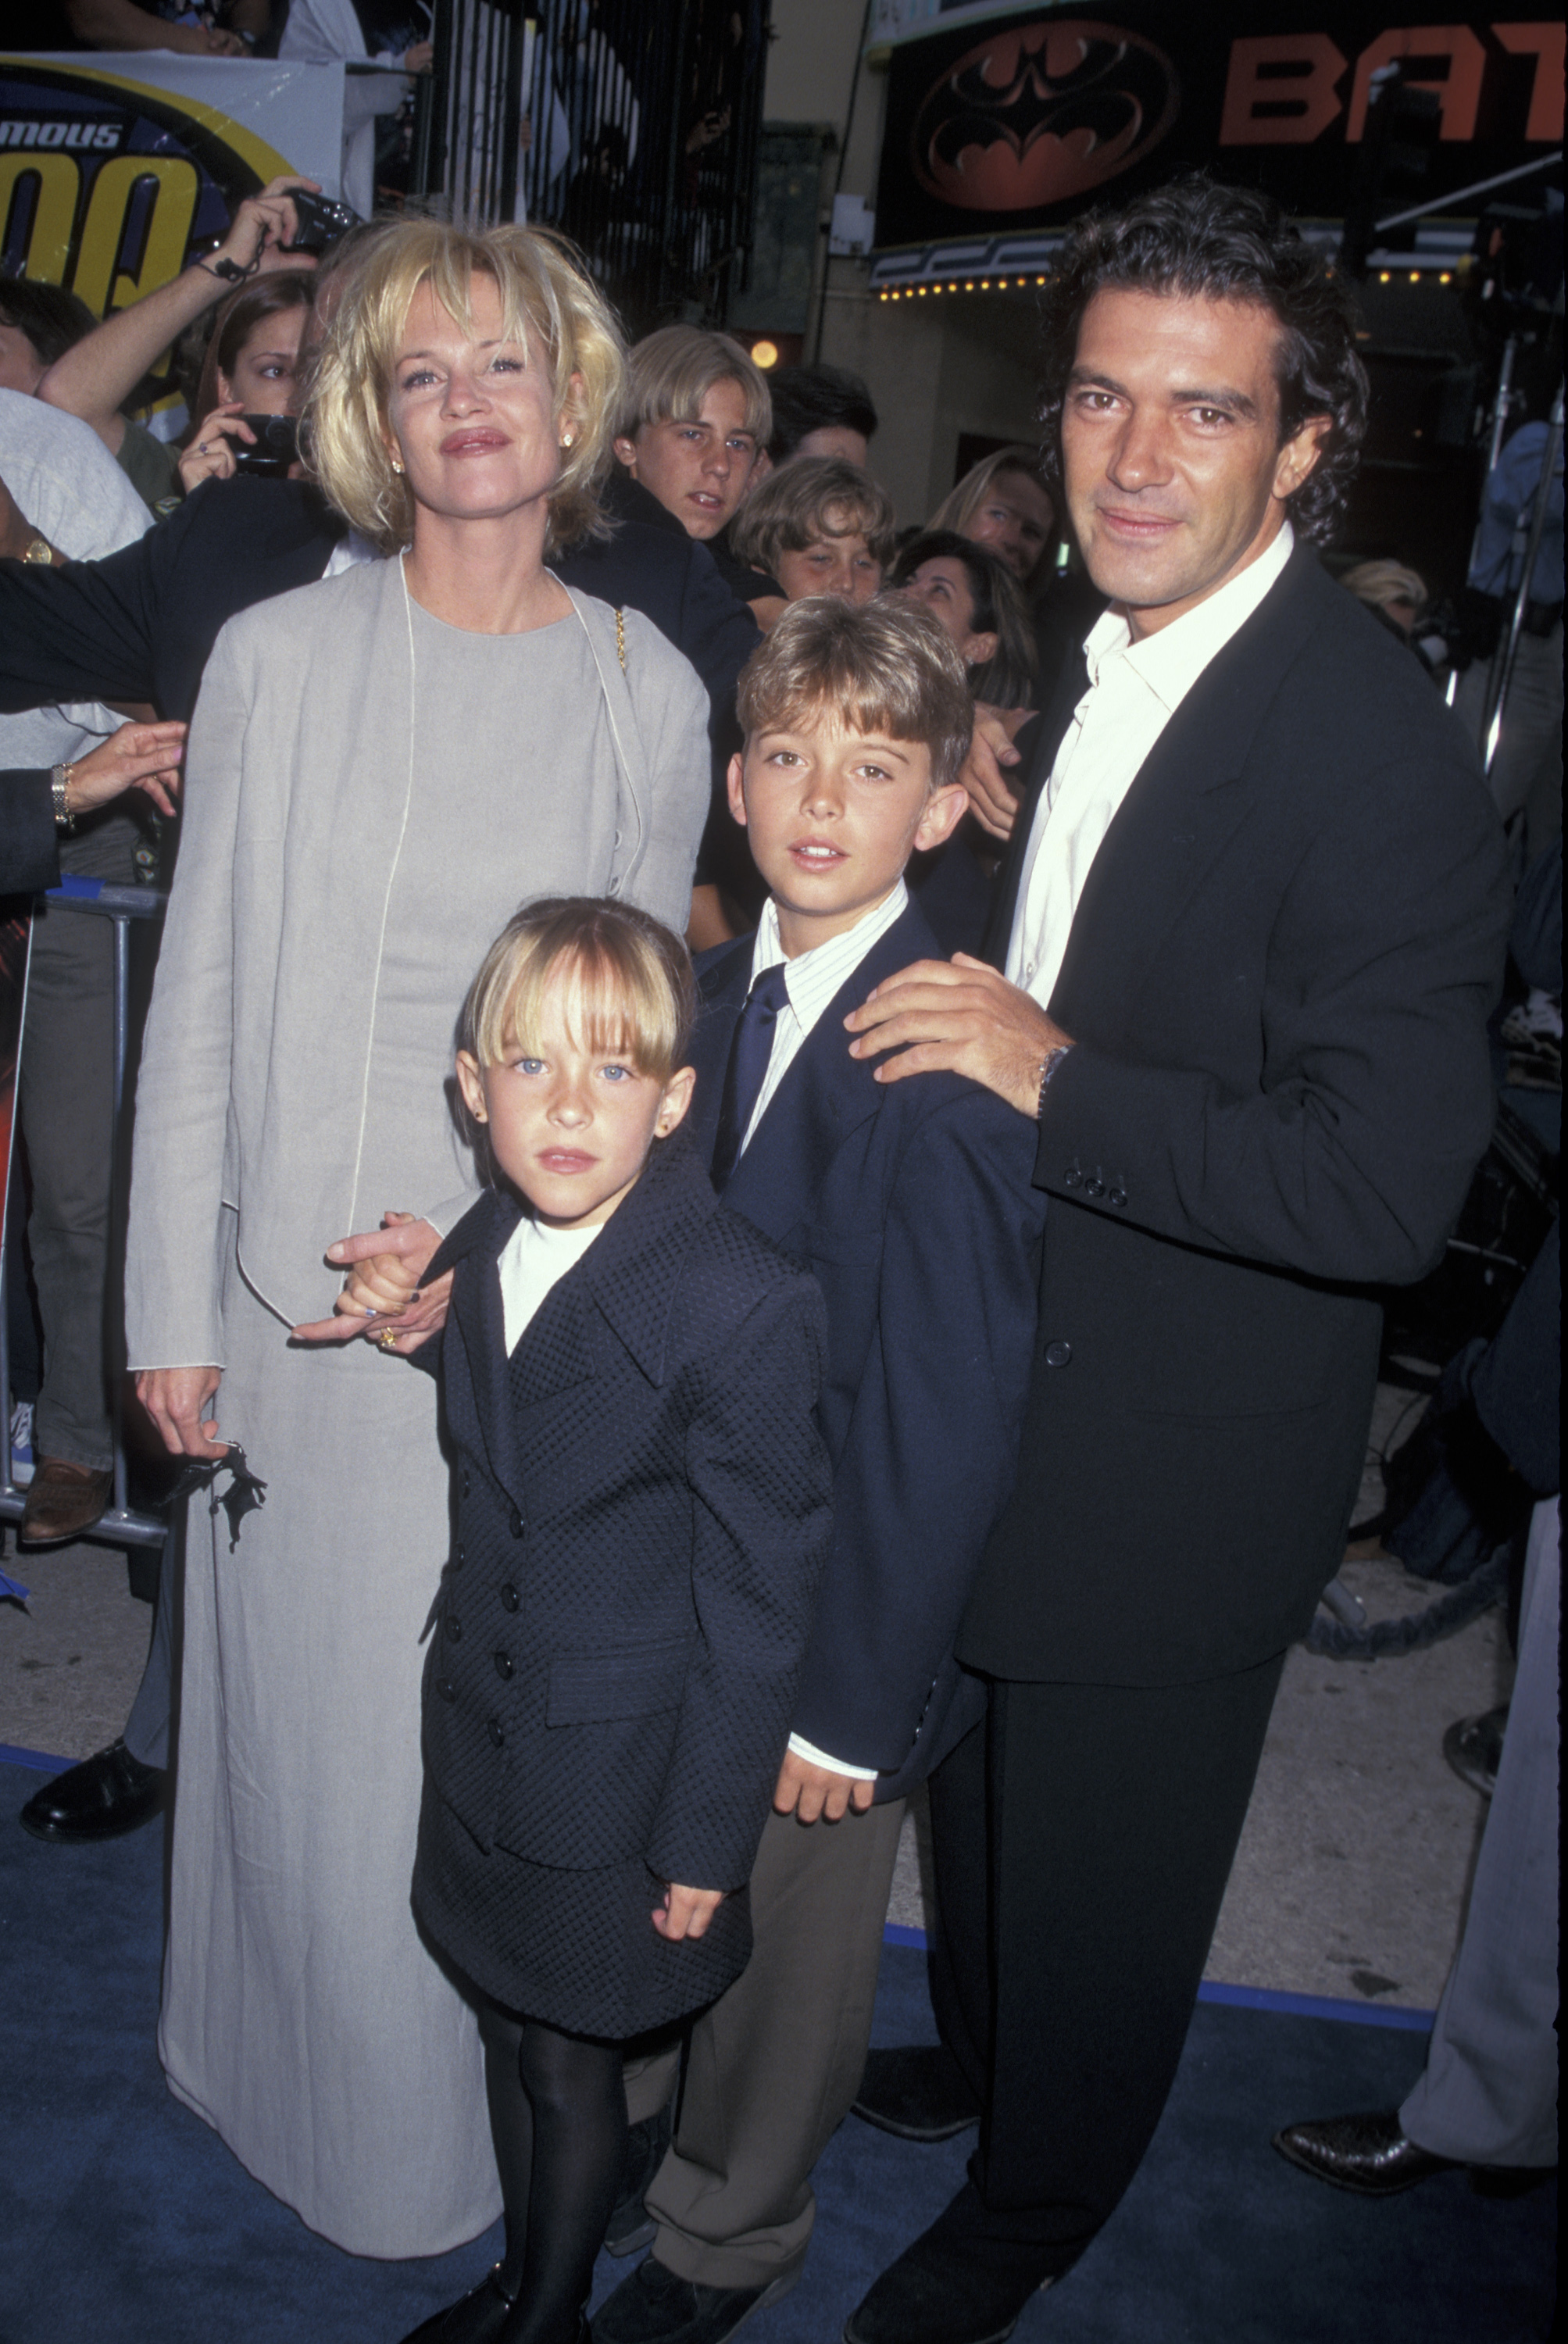 Melanie Griffith, Dakota Johnson, Alexander Bauer y Antonio Banderas en el estreno de "Batman & Robin" en Los Ángeles, el 12 de junio de 1997. | Foto: Getty Images